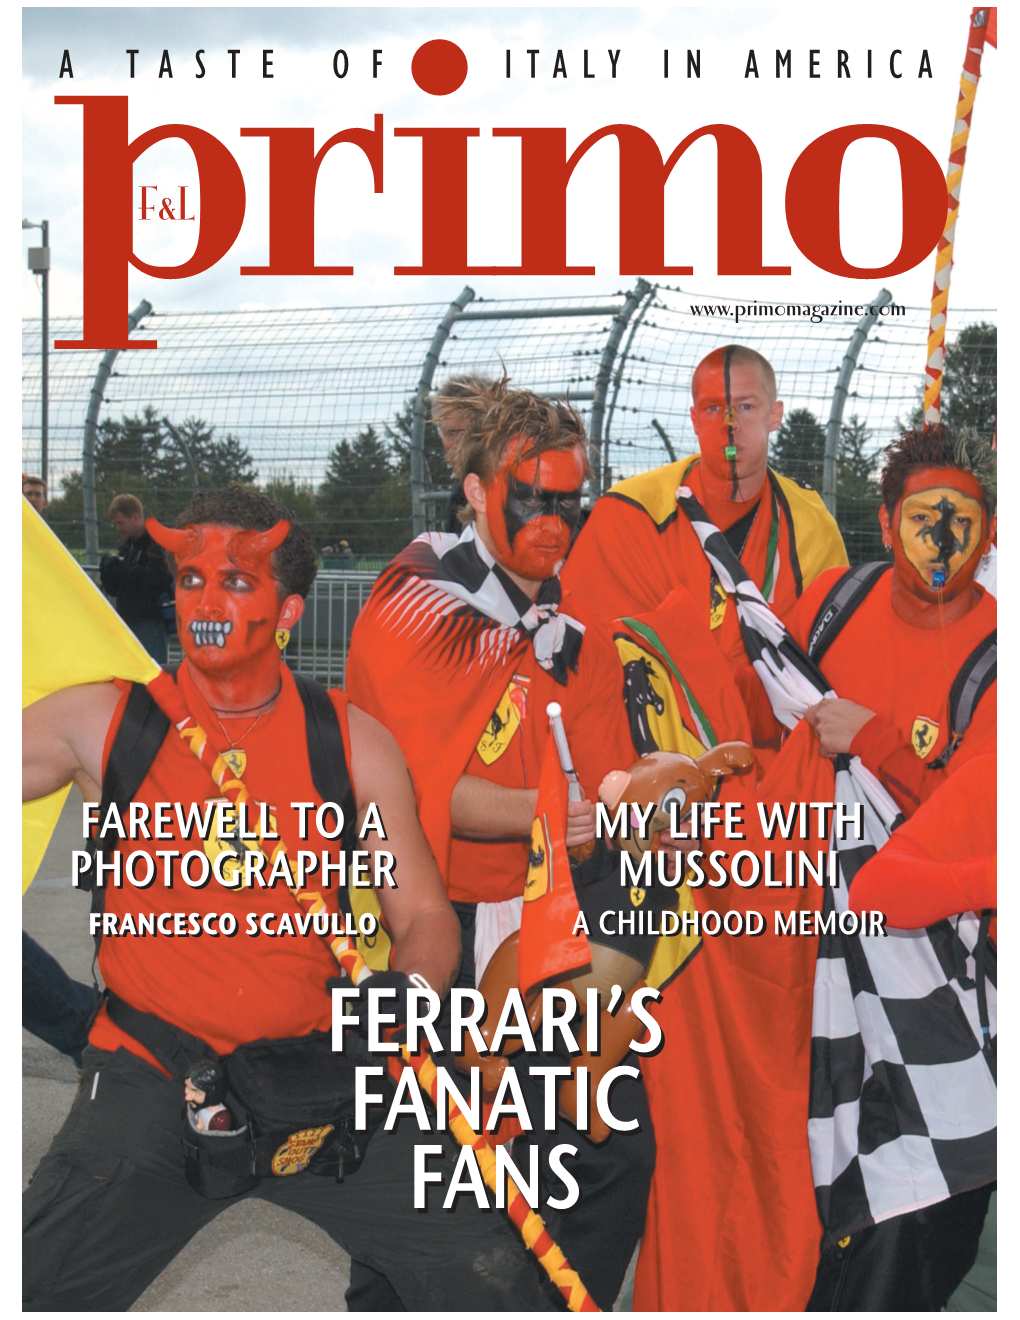 Ferrari's Fanatic Fans Ferrari's Fanatic Fans